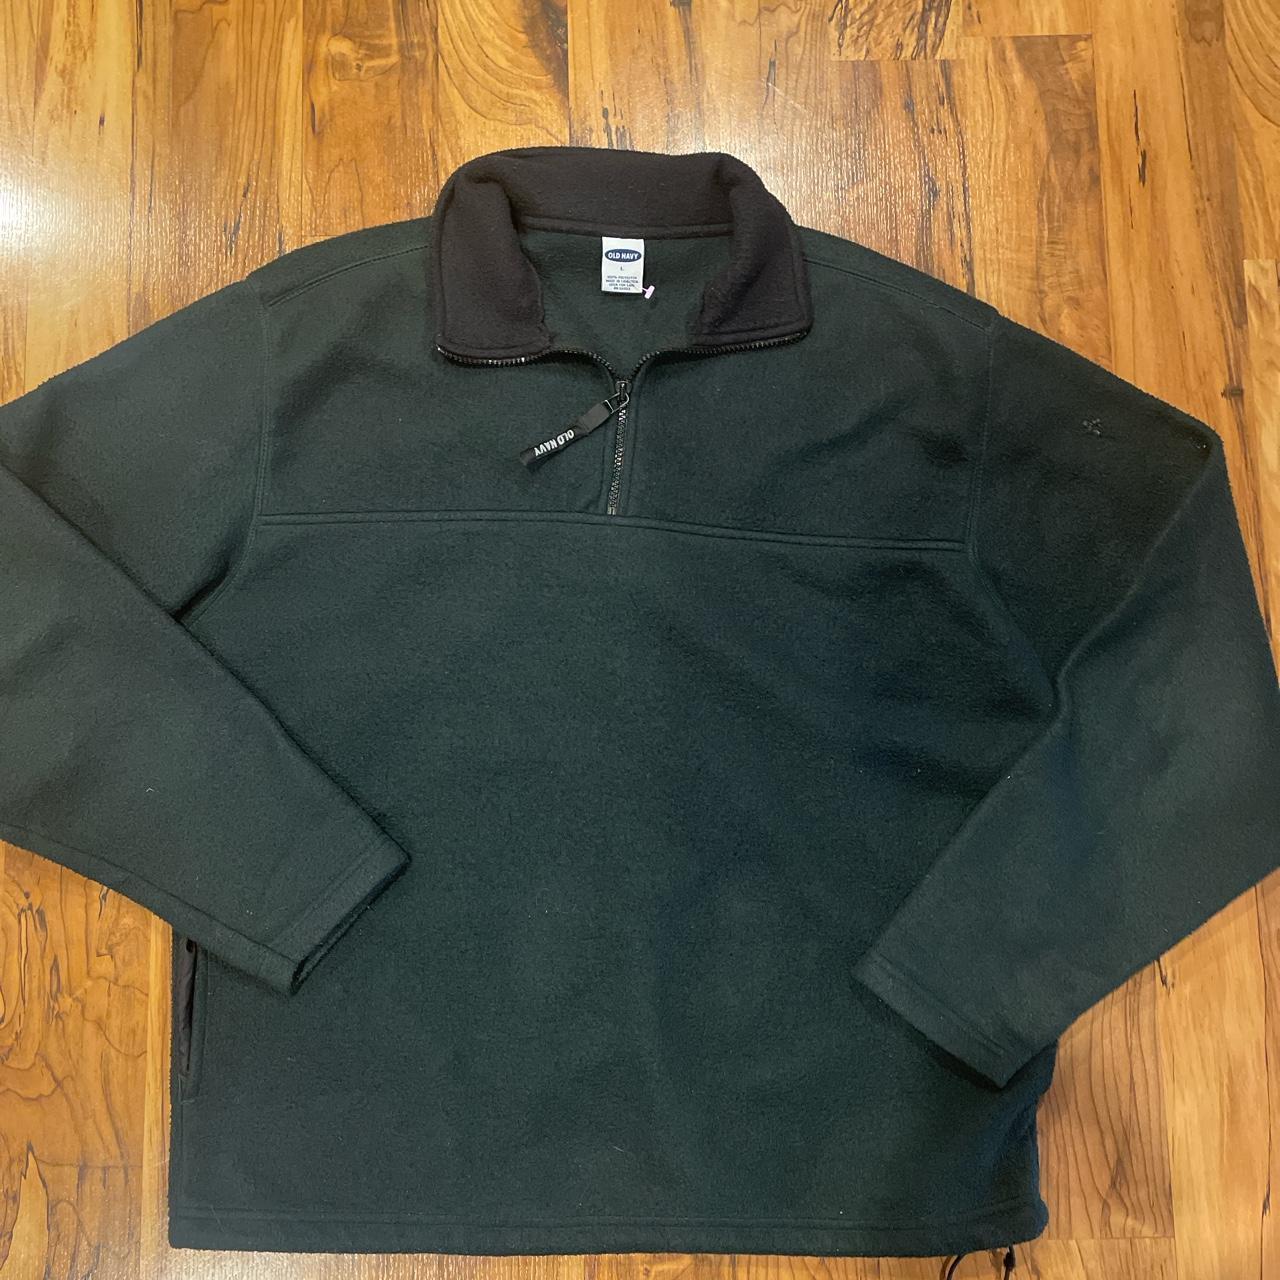 Old Navy Men's Green Sweatshirt | Depop